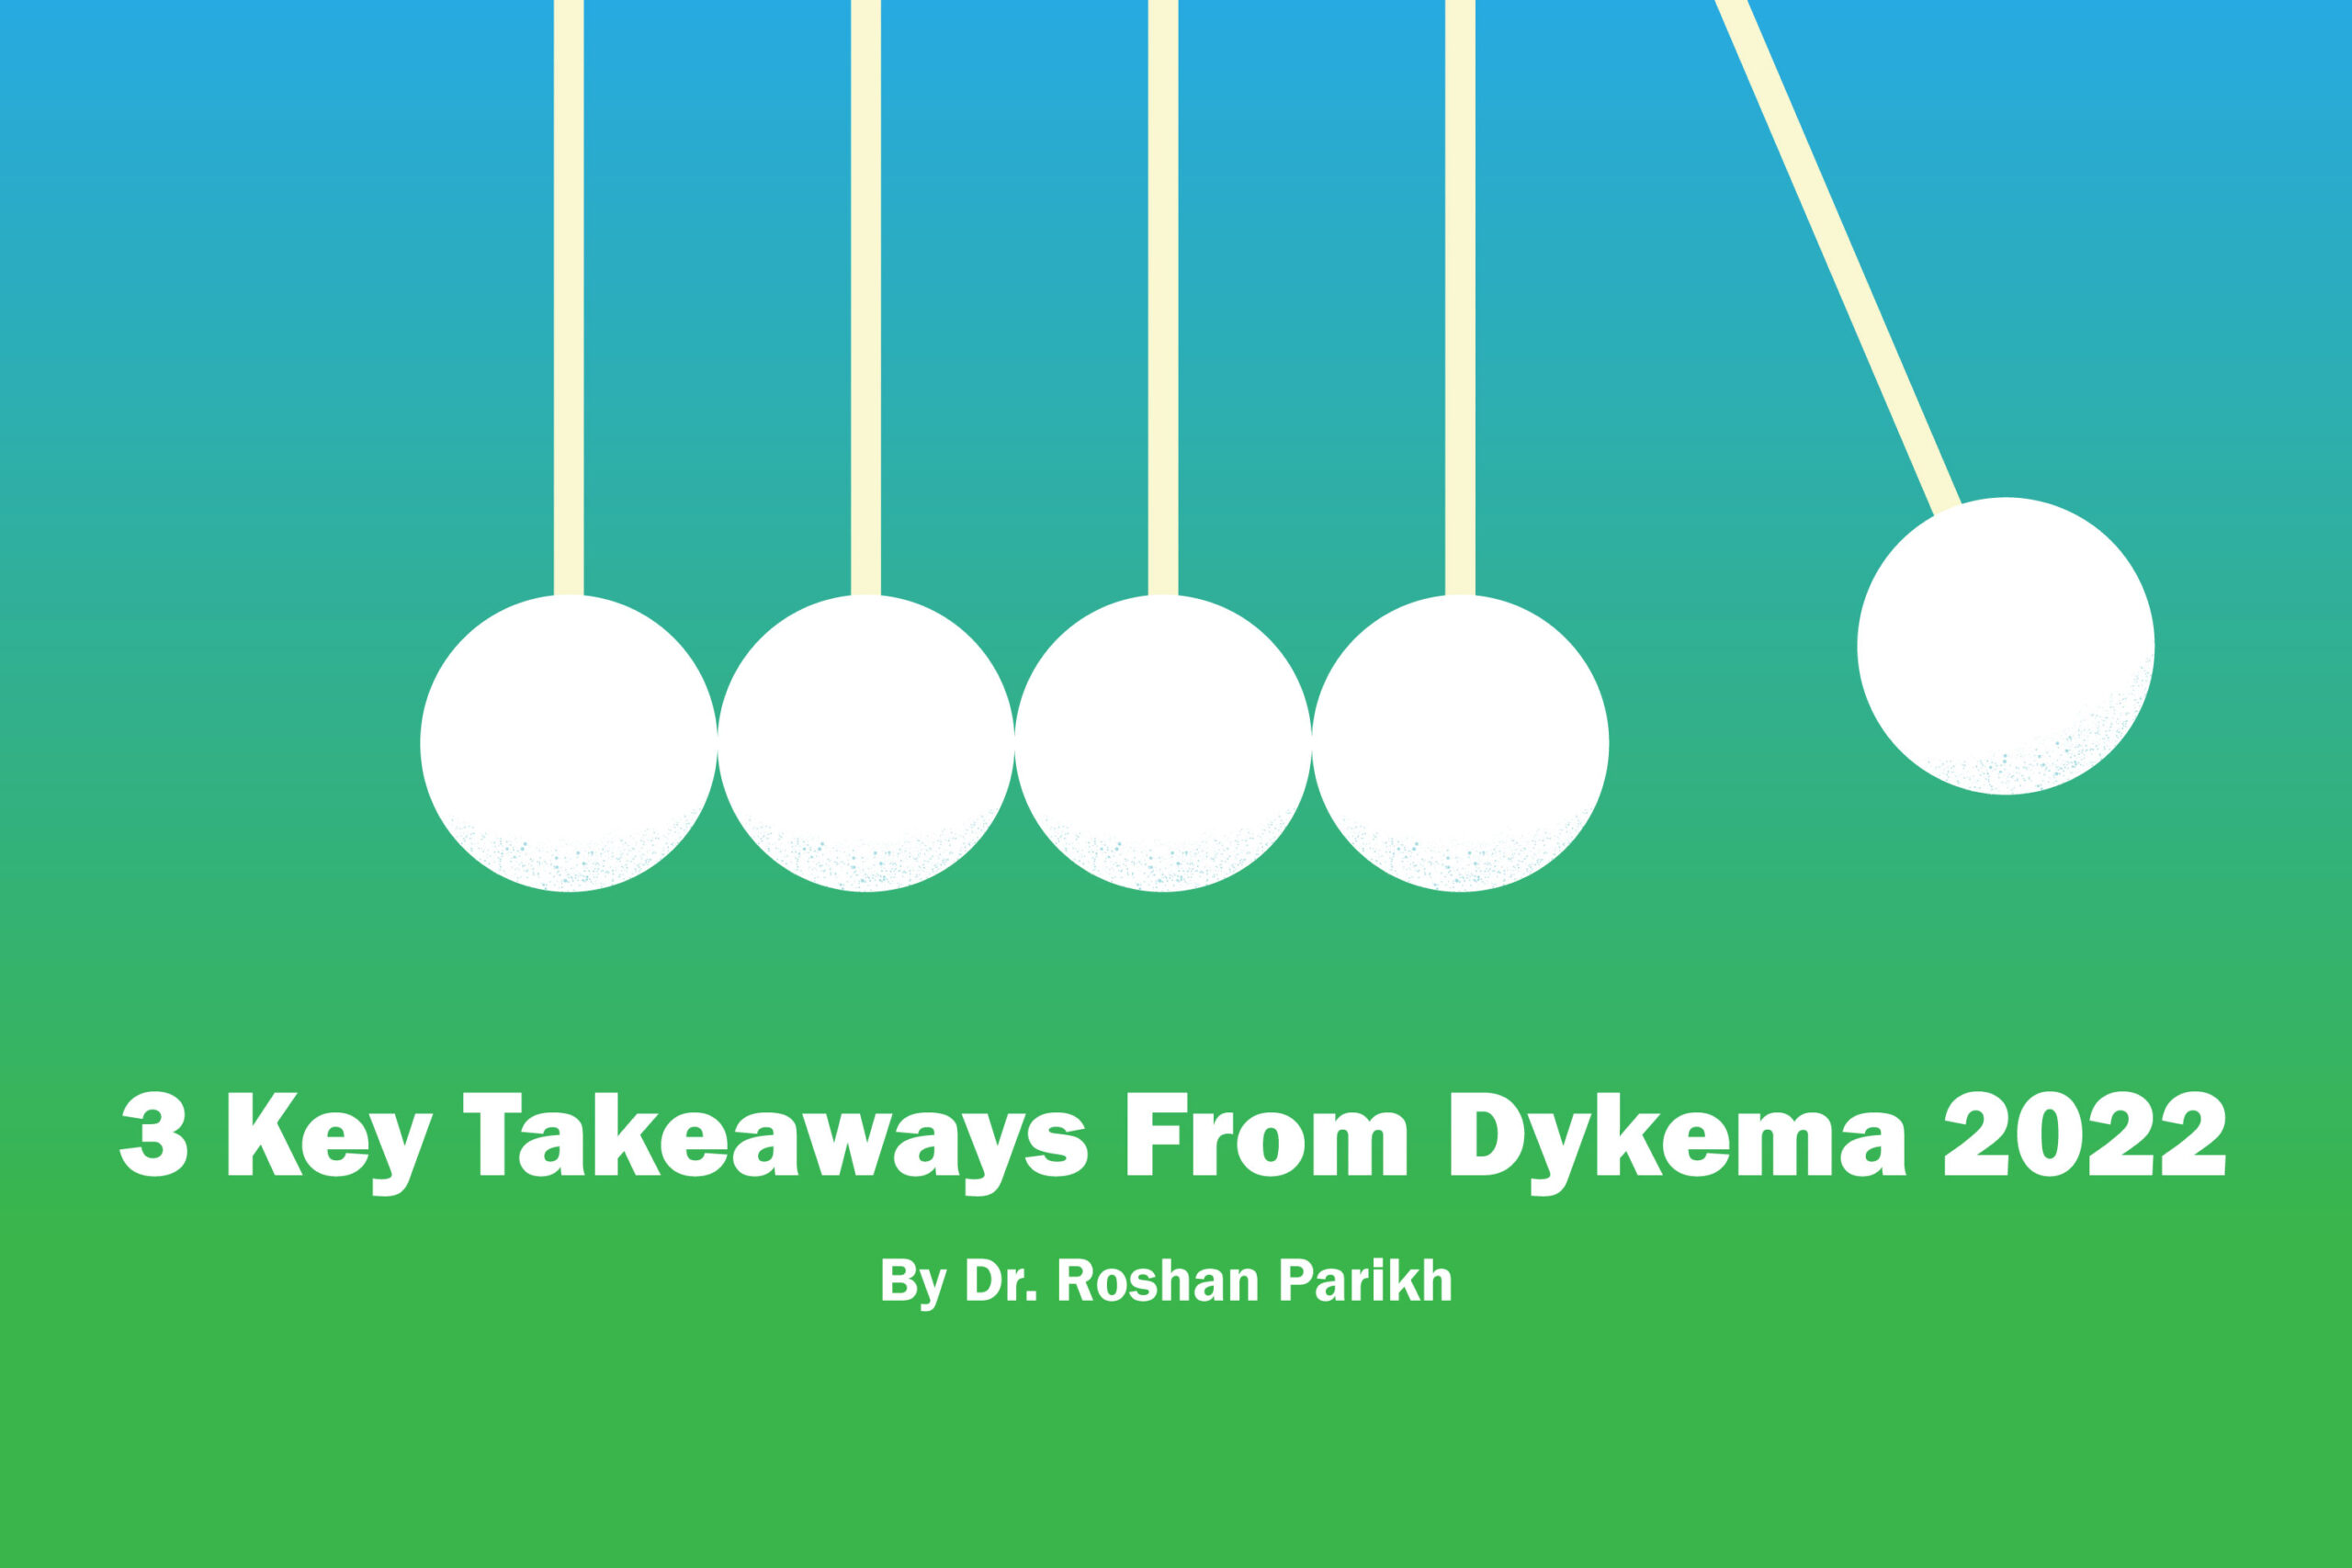 3 Key Takeaways from Dykema 2022